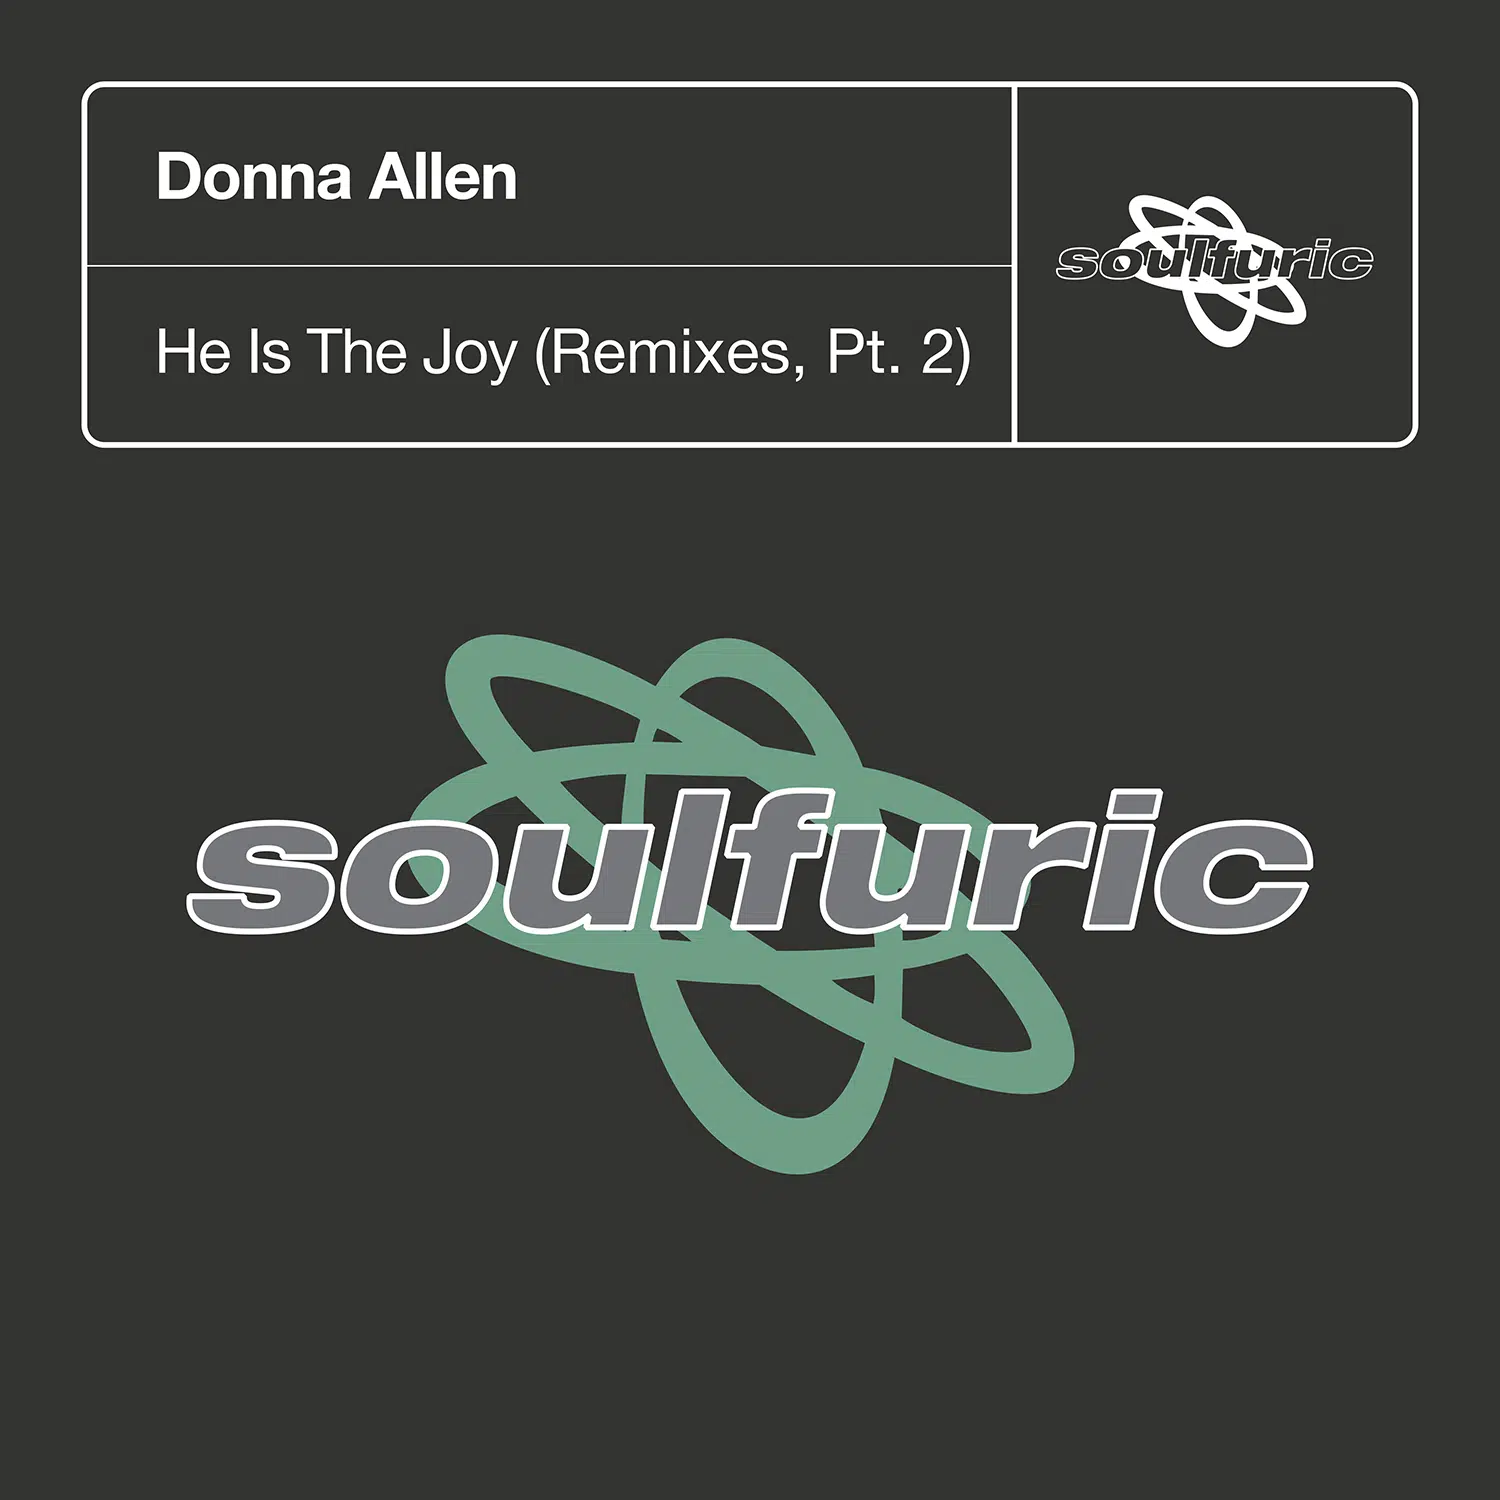 Donna Allen “He Is Joy” Remixes Part 2